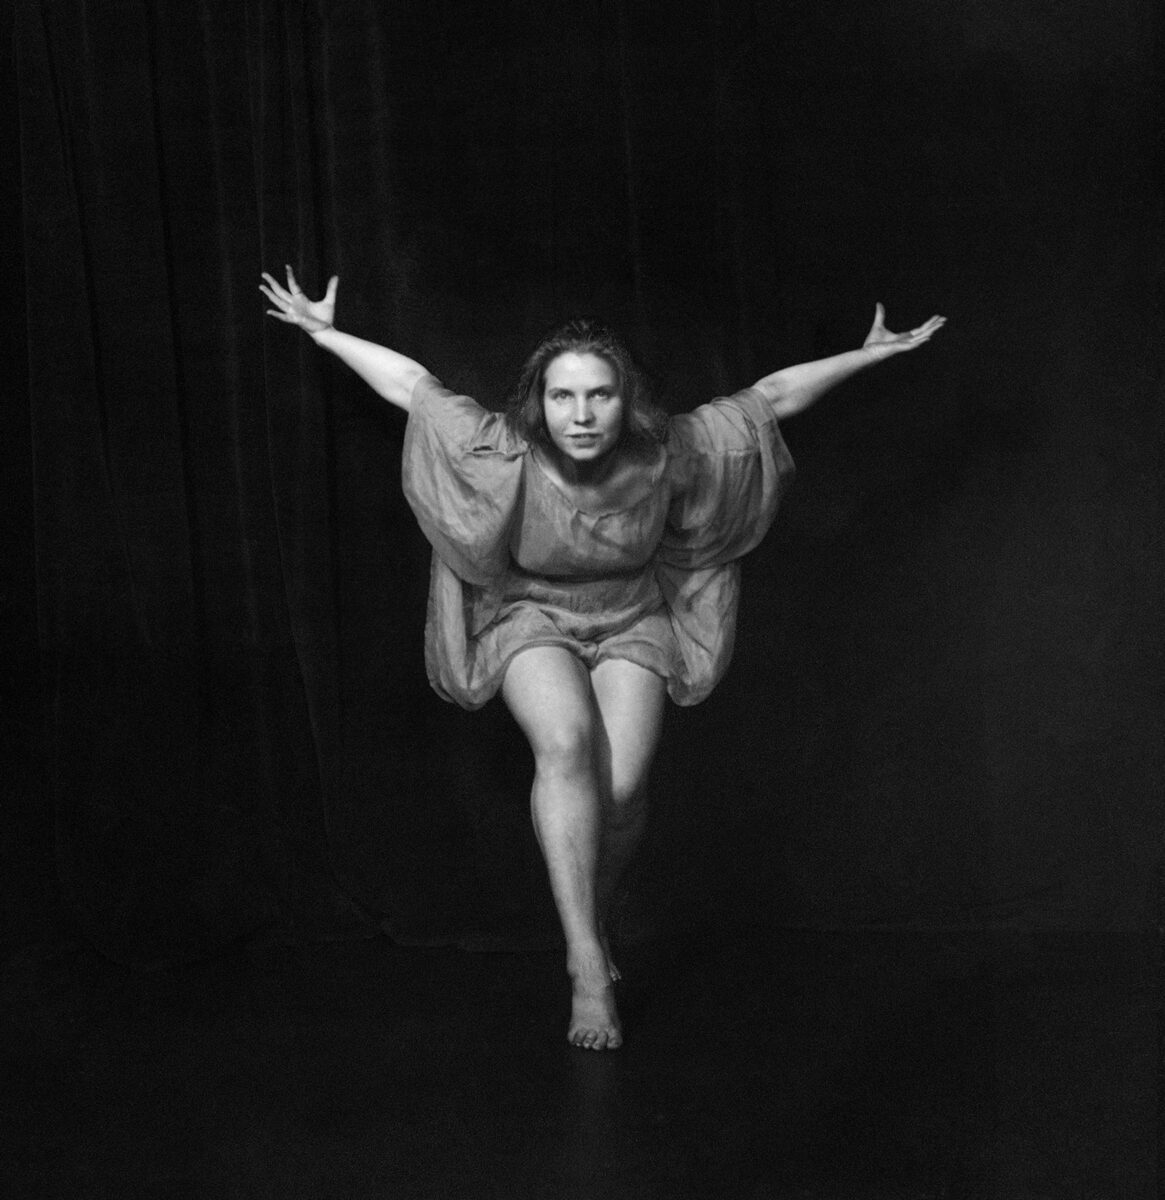 Έλλη Σουγιουλτζόγλου-Σεραϊδάρη (Nelly’s). Η χορεύτρια Maina Claes στο στούντιο του Franz Fiedler, 1922-23. © Μουσείο Μπενάκη/Φωτογραφικά Αρχεία.